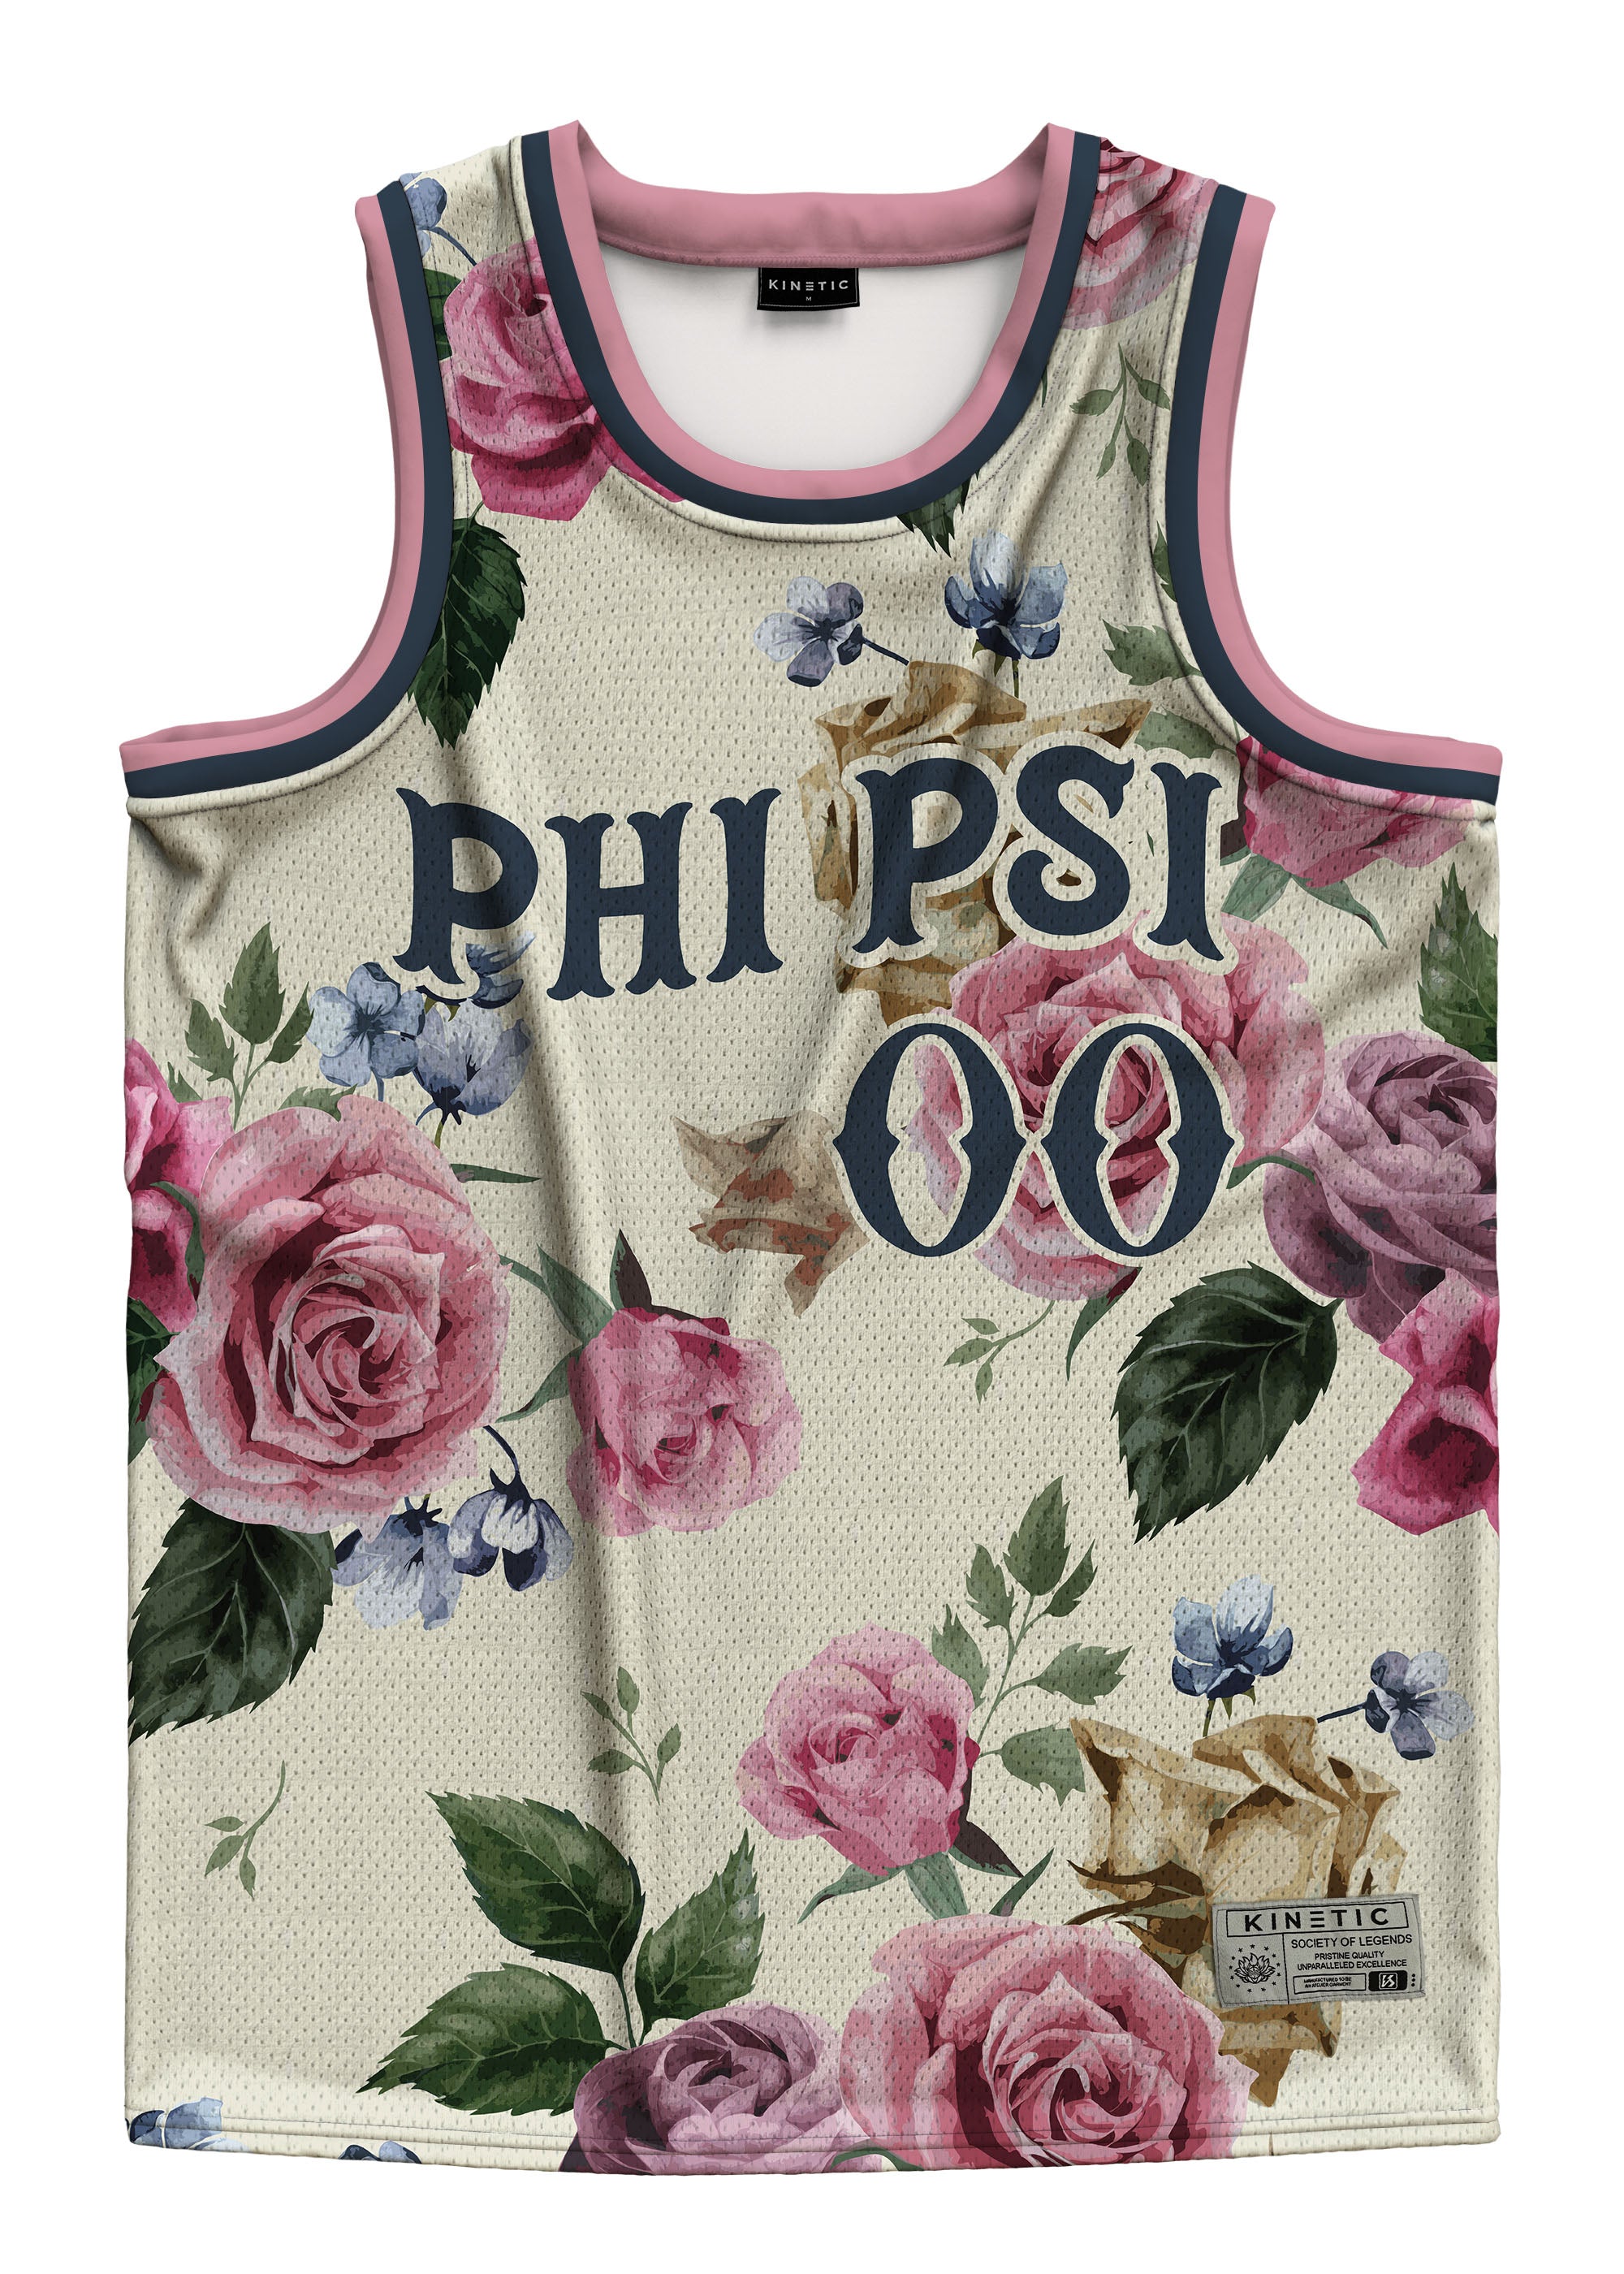 Phi Kappa Psi - Chicago Basketball Jersey